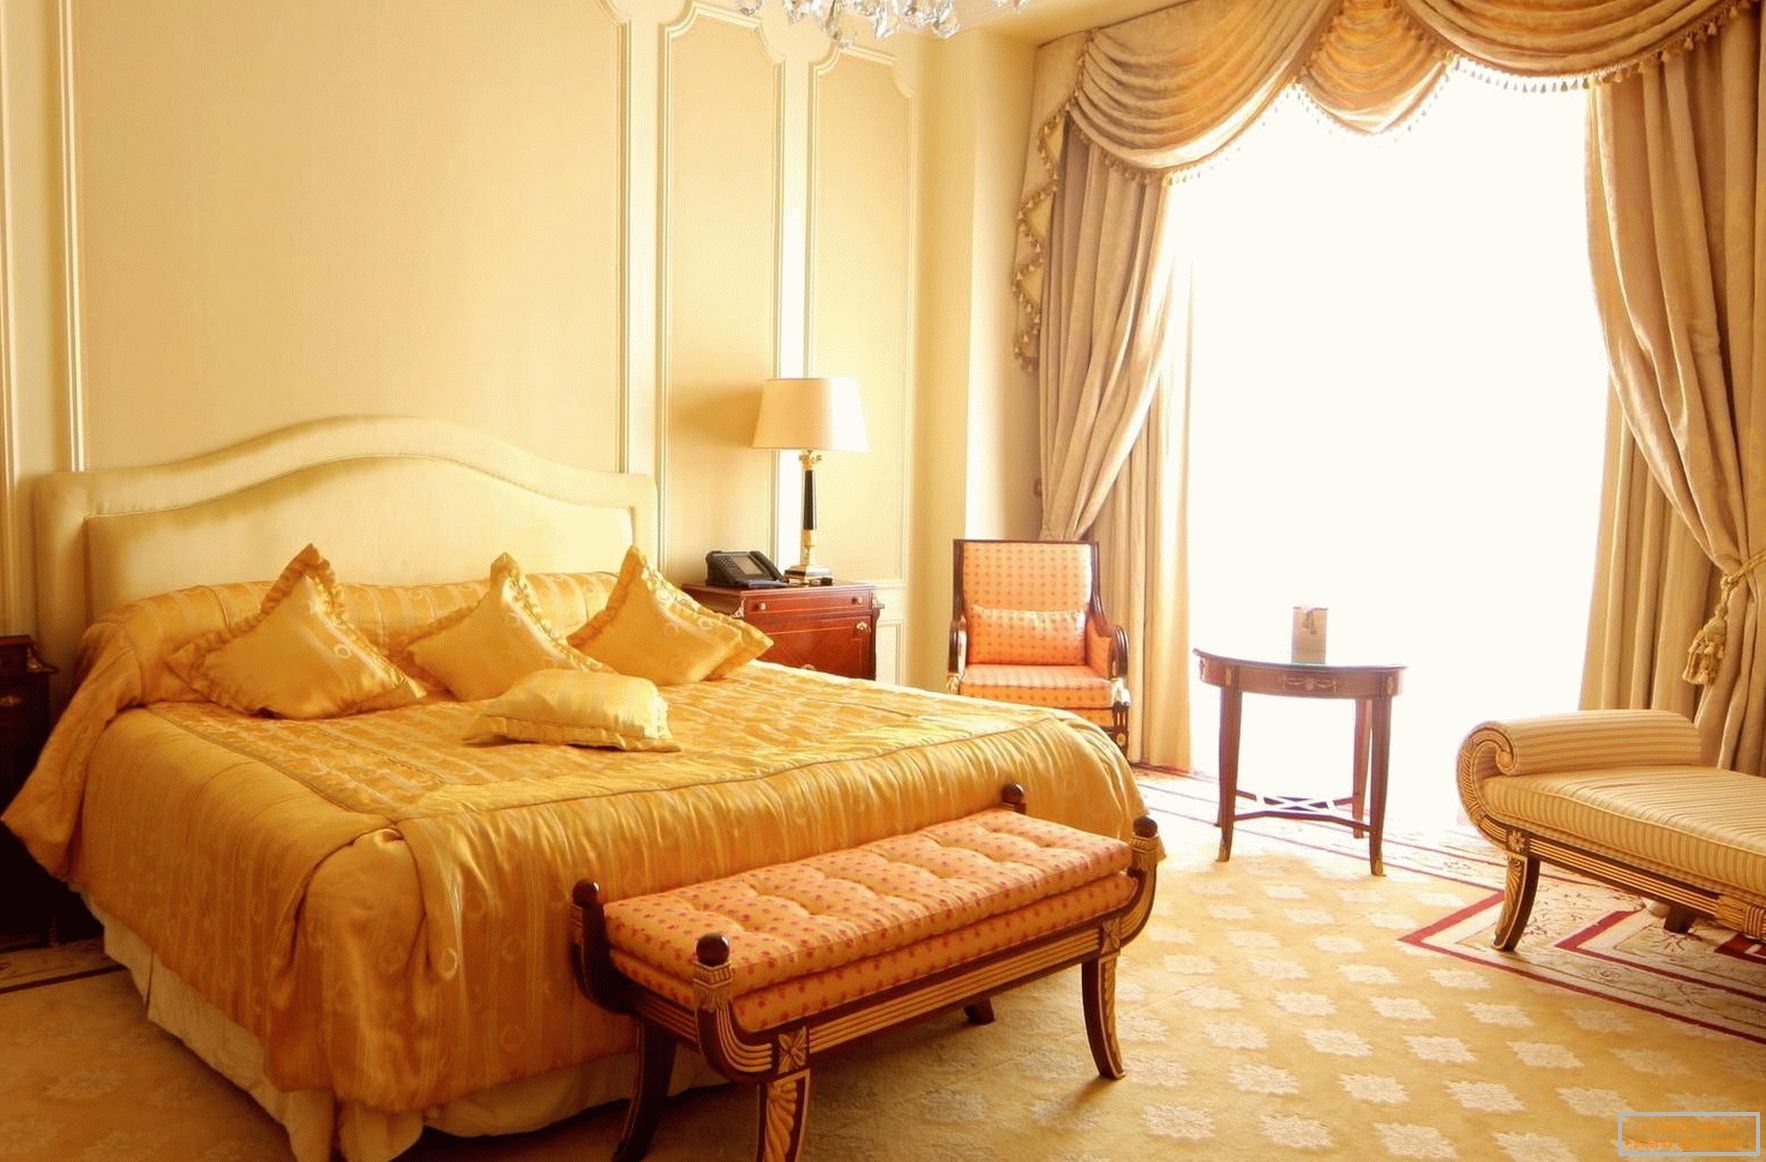 Світла, простора спальна кімната в стилі бароко з панорамними вікнами. 